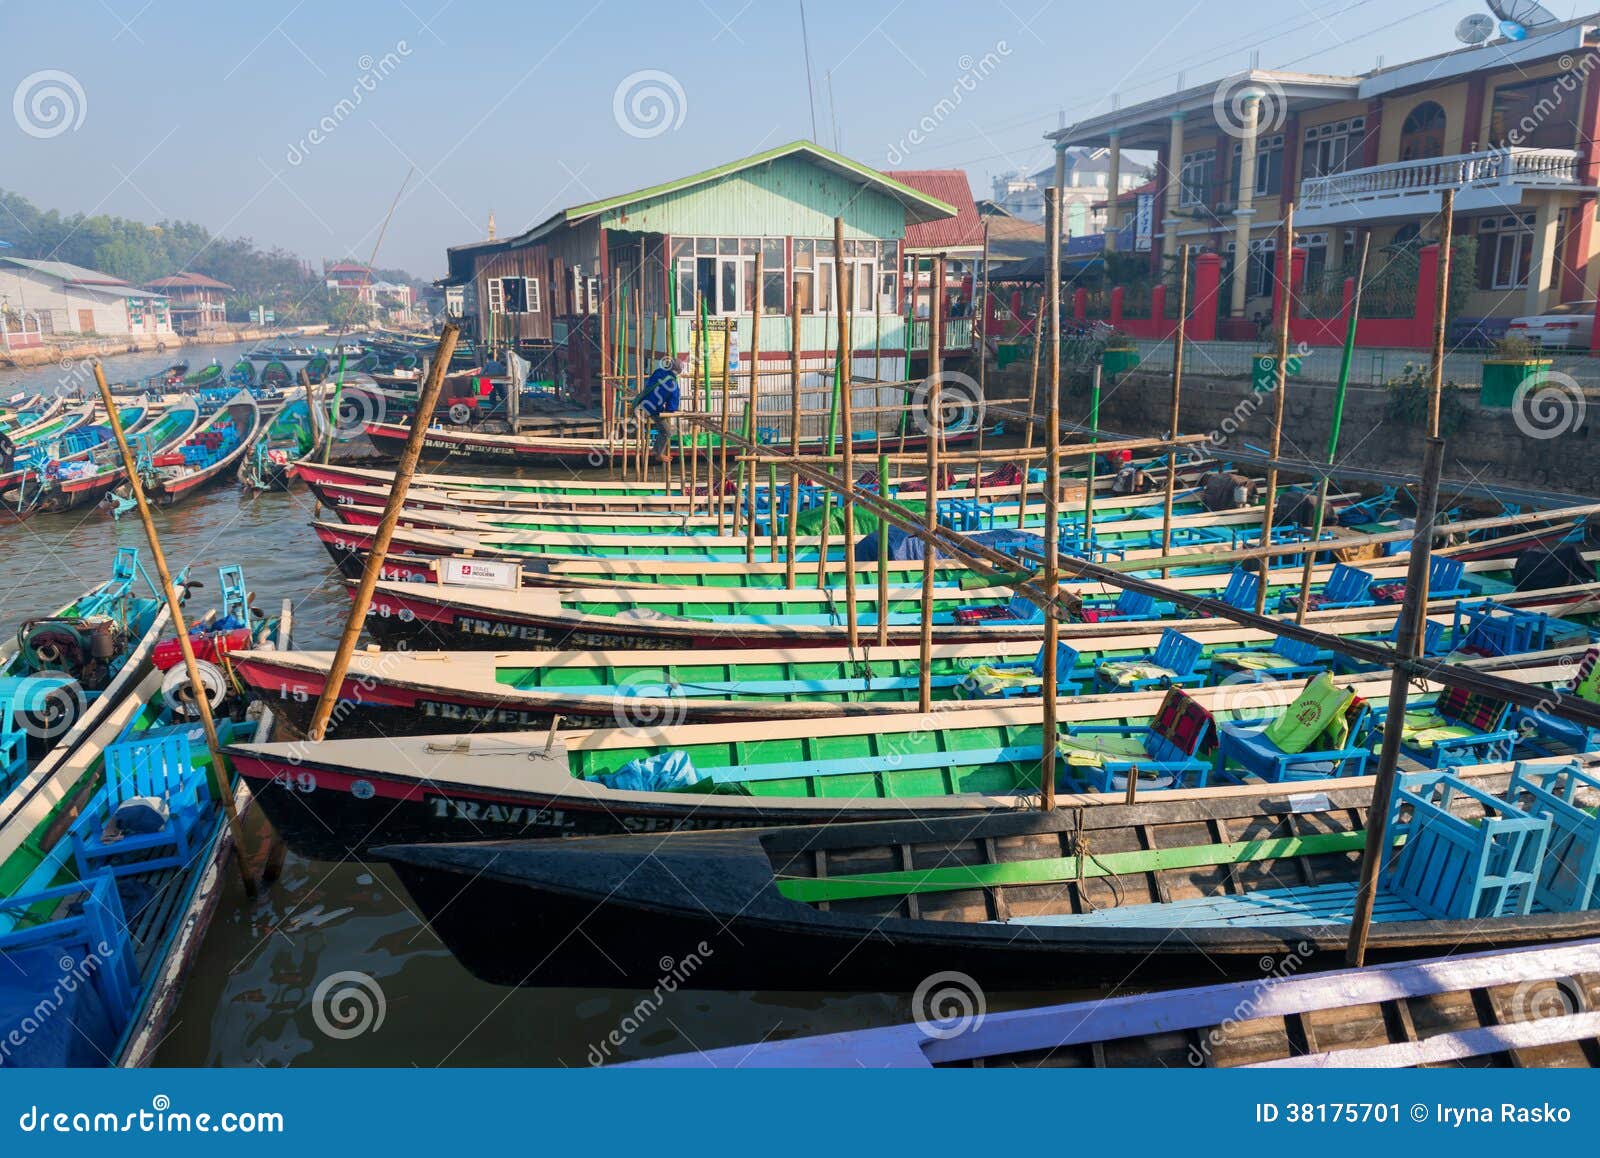 wooden tourist boats on inle lake, myanmar burma